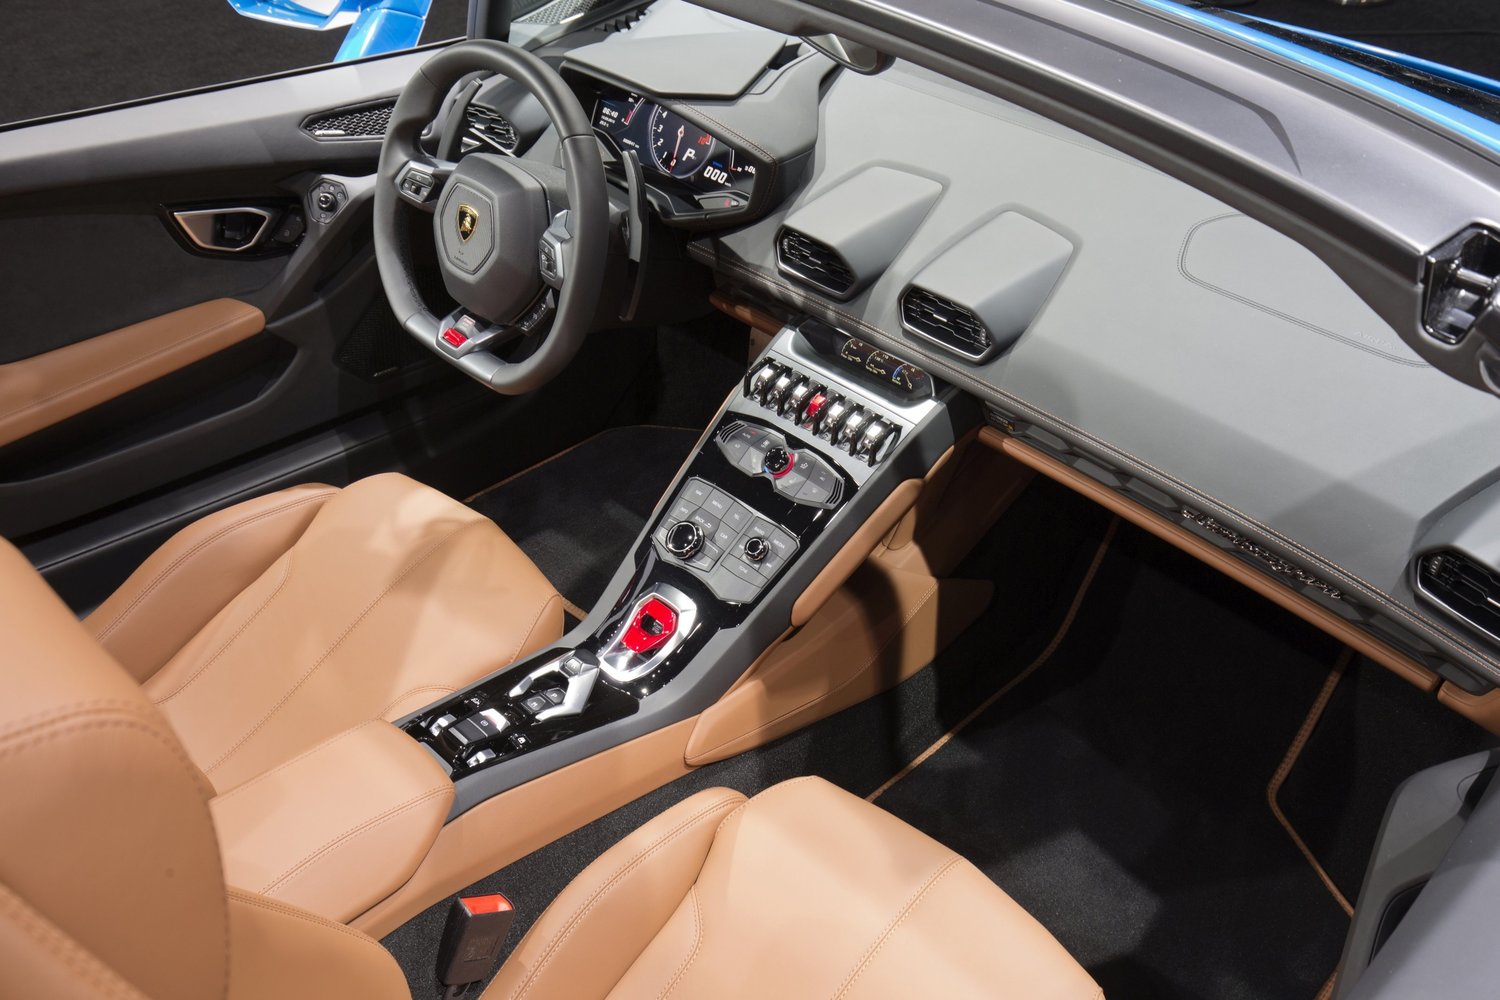 кабриолет Spyder Lamborghini Huracan 2014 - 2016г выпуска модификация 5.2 AMT (610 л.с.) 4×4